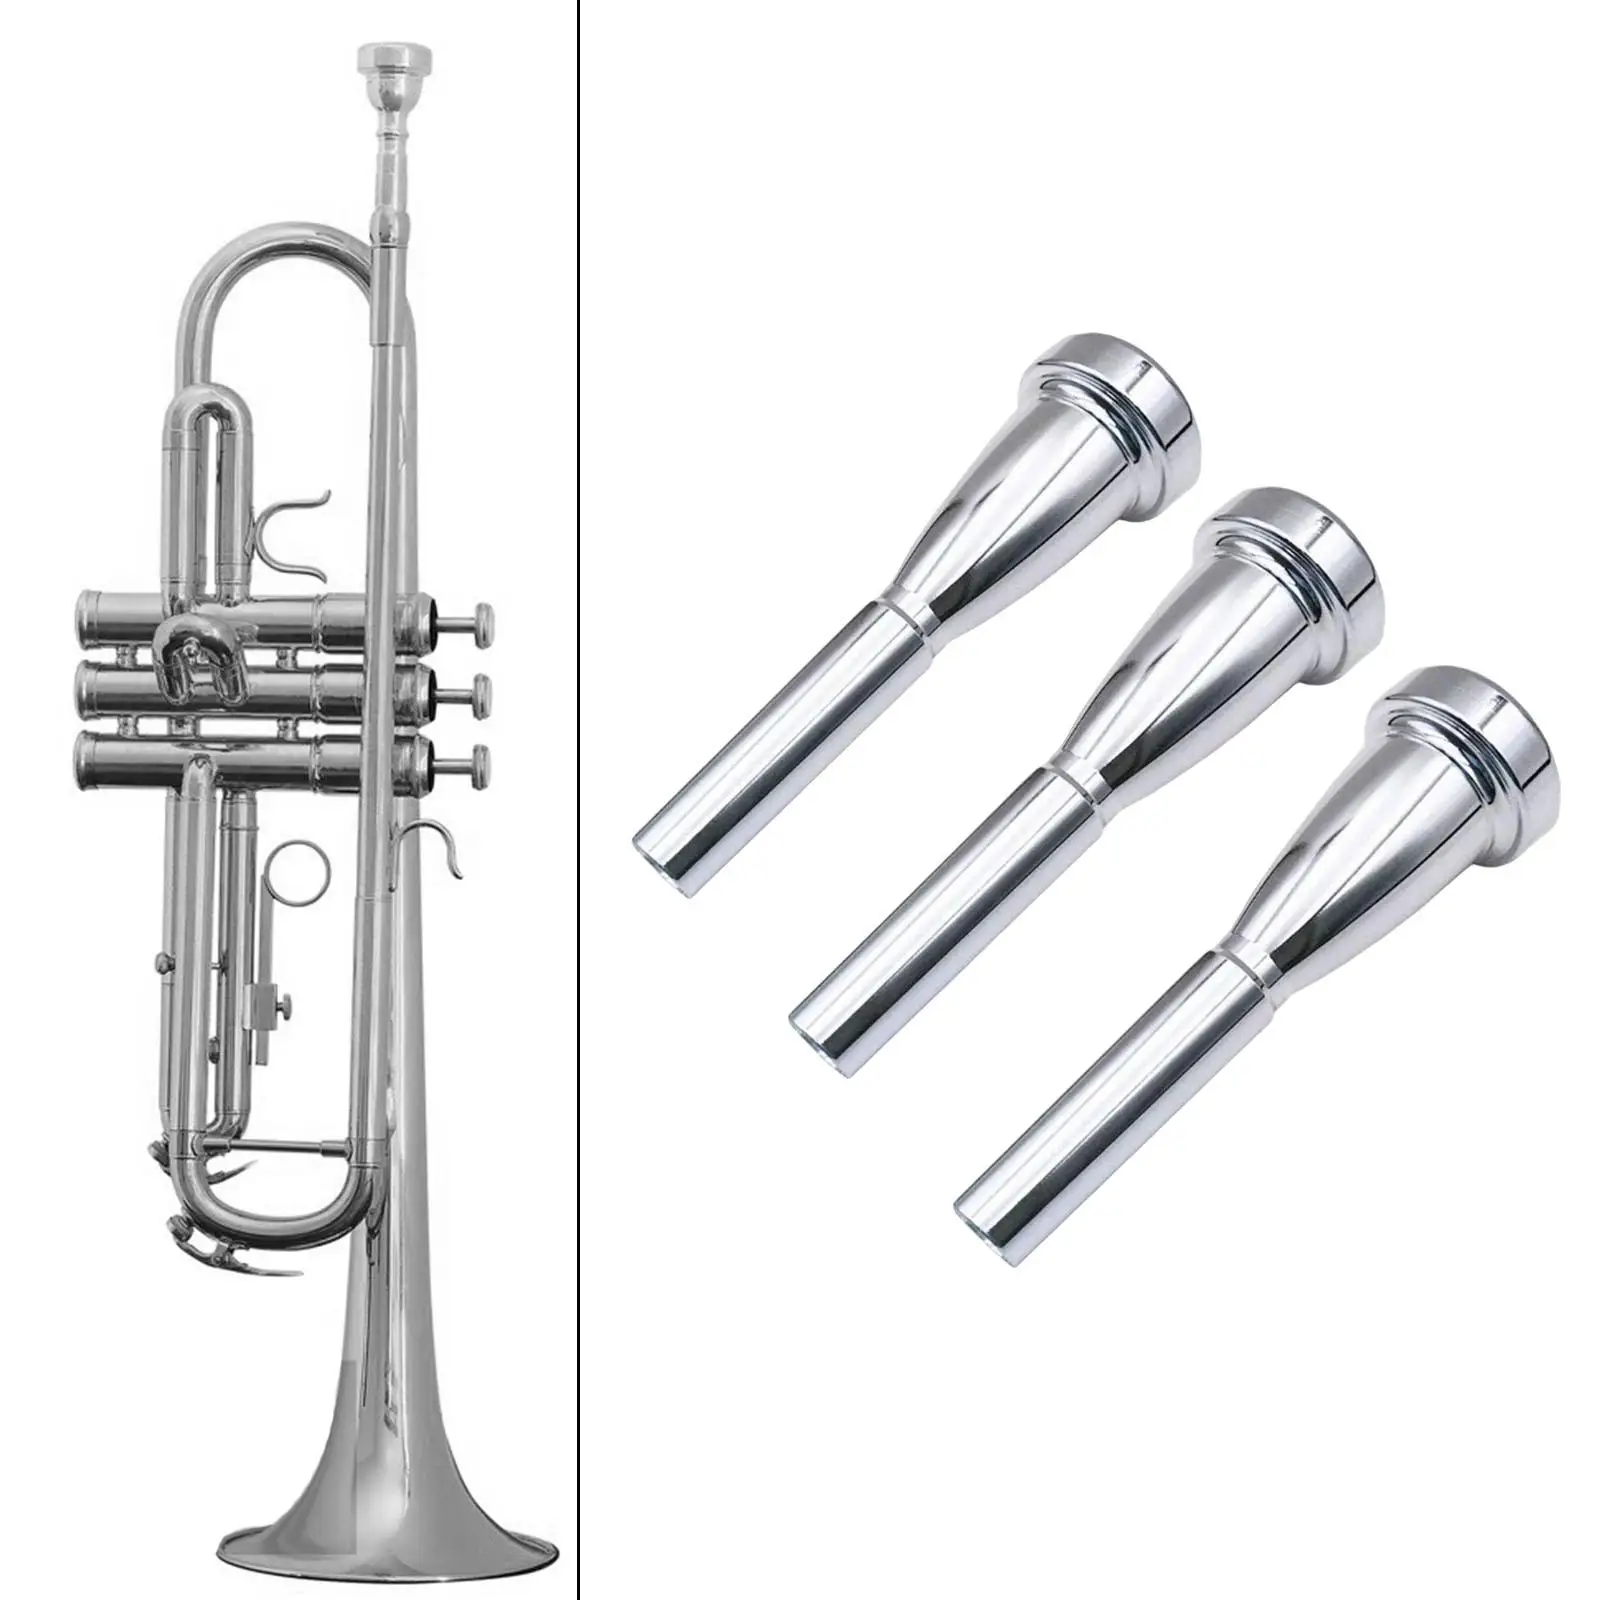 3Pcs Trumpet Mouthpiece Trumpet Parts Professional Players